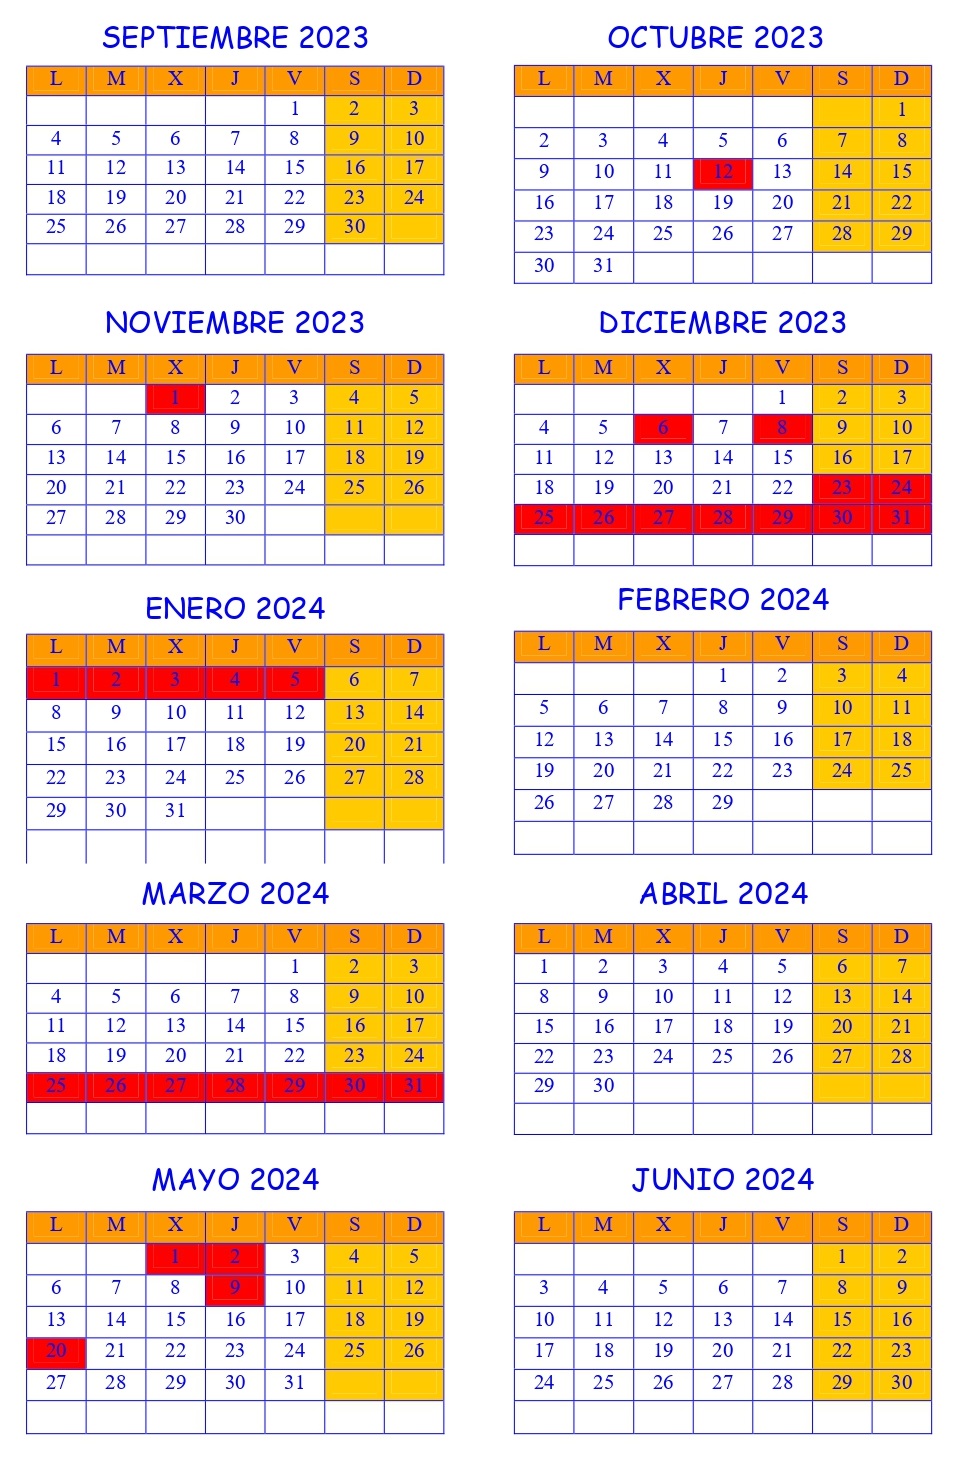 Calendario_2023-2024.jpg